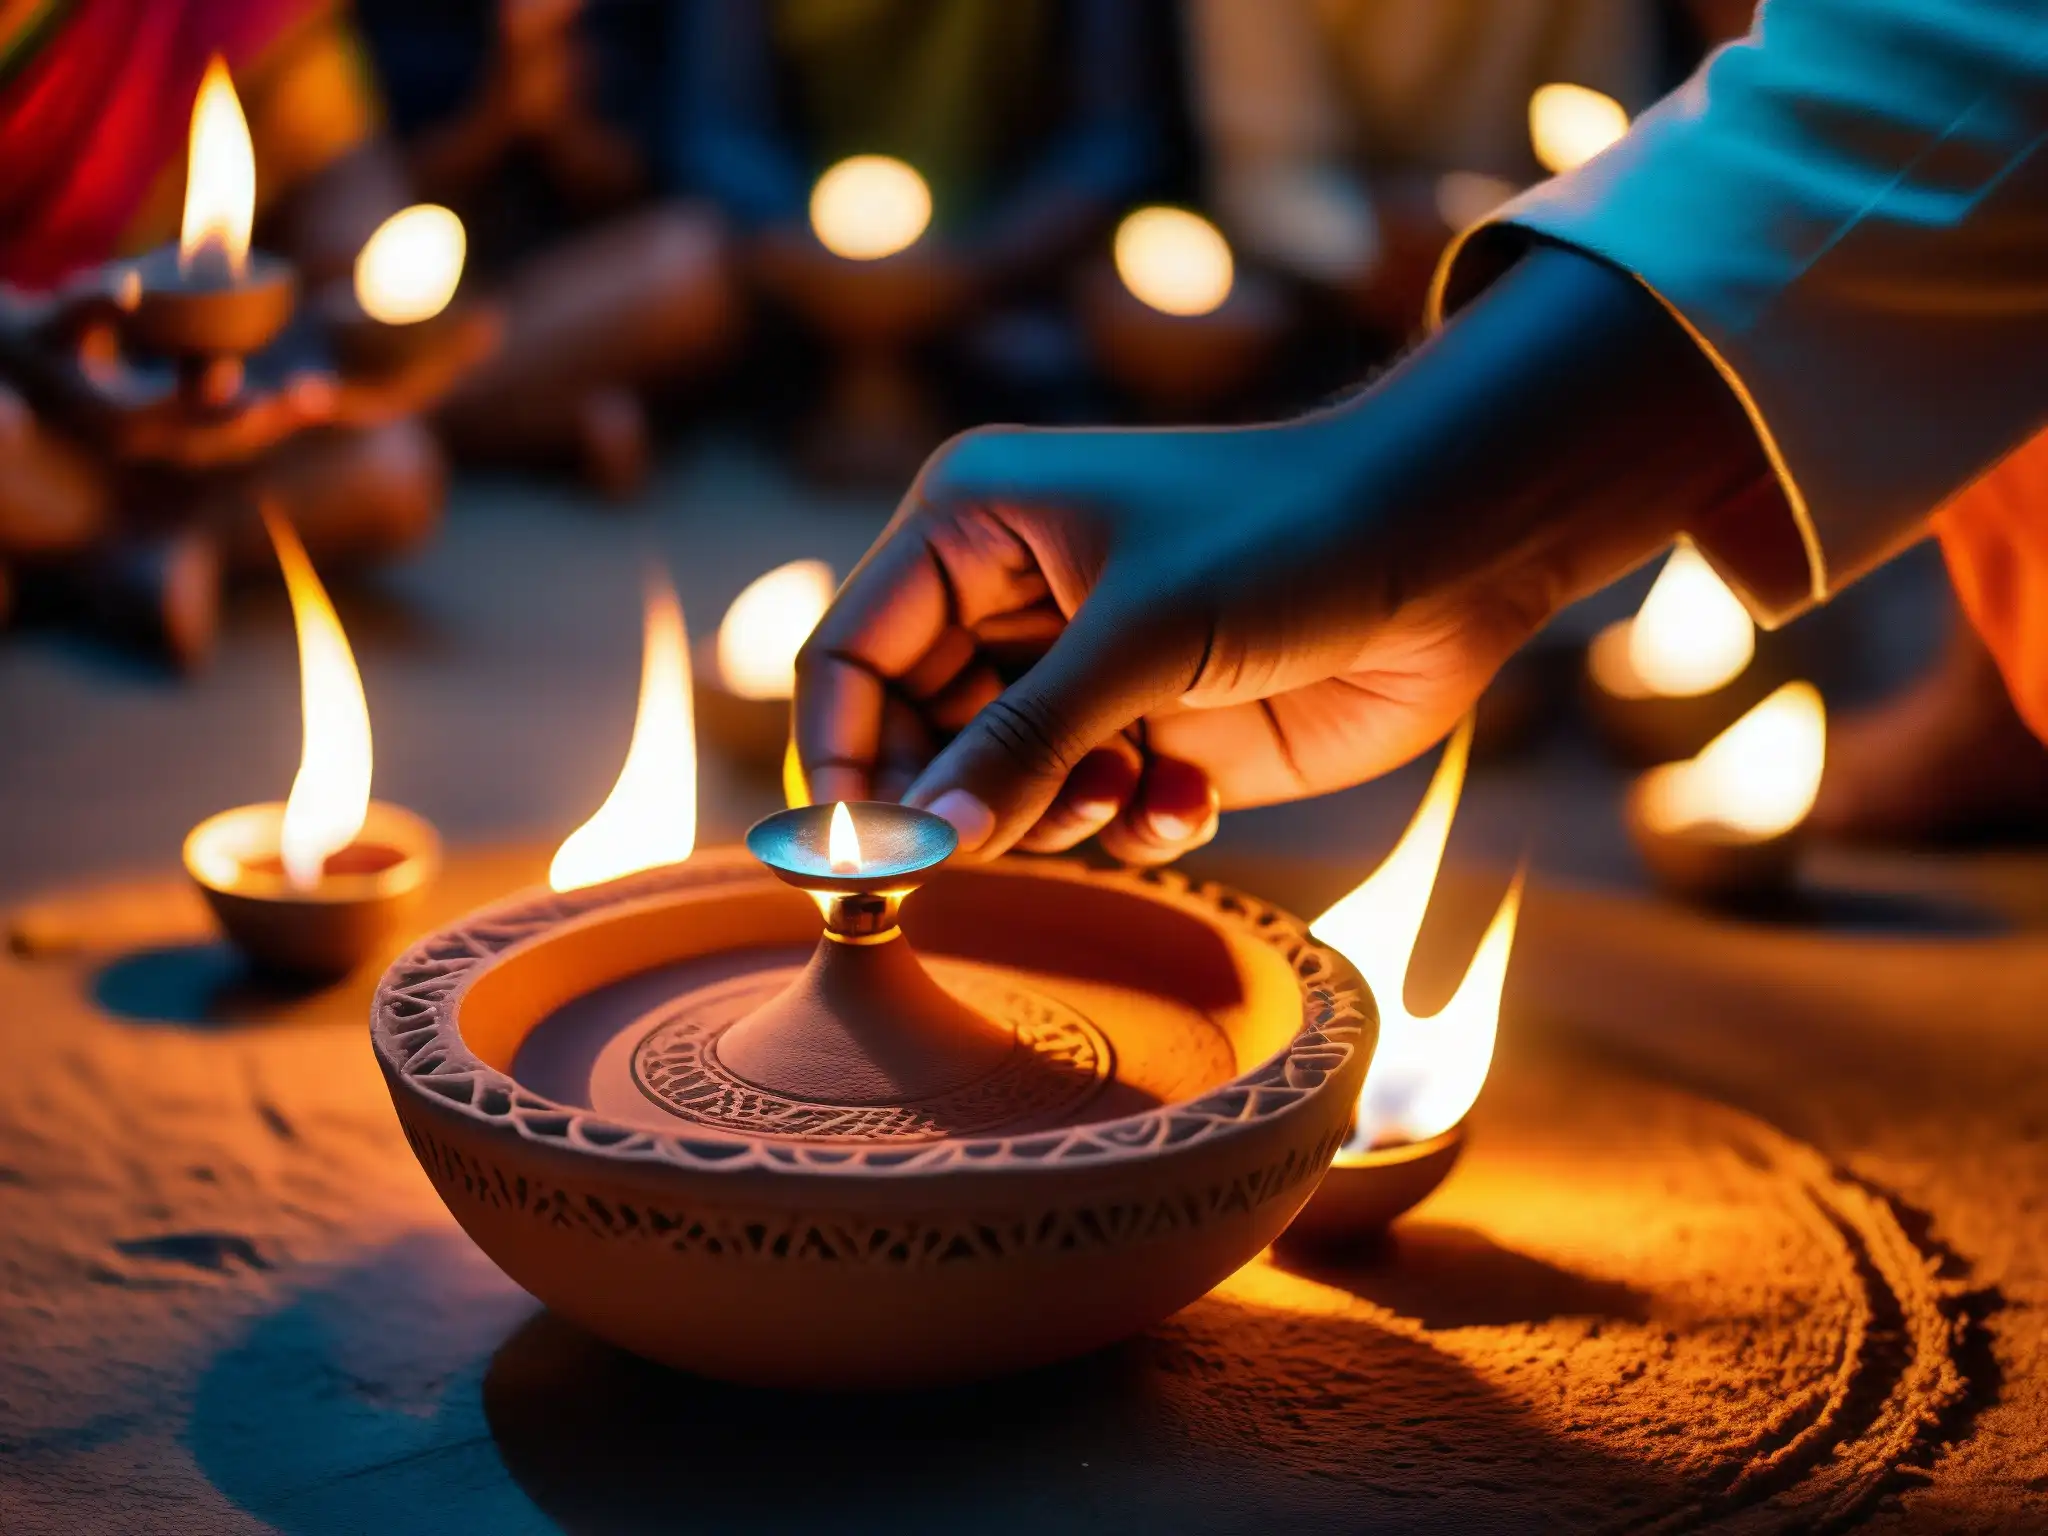 Un diya de arcilla encendido durante un ritual de exorcismo hindú, iluminando rostros y artefactos religiosos en una atmósfera inquietante